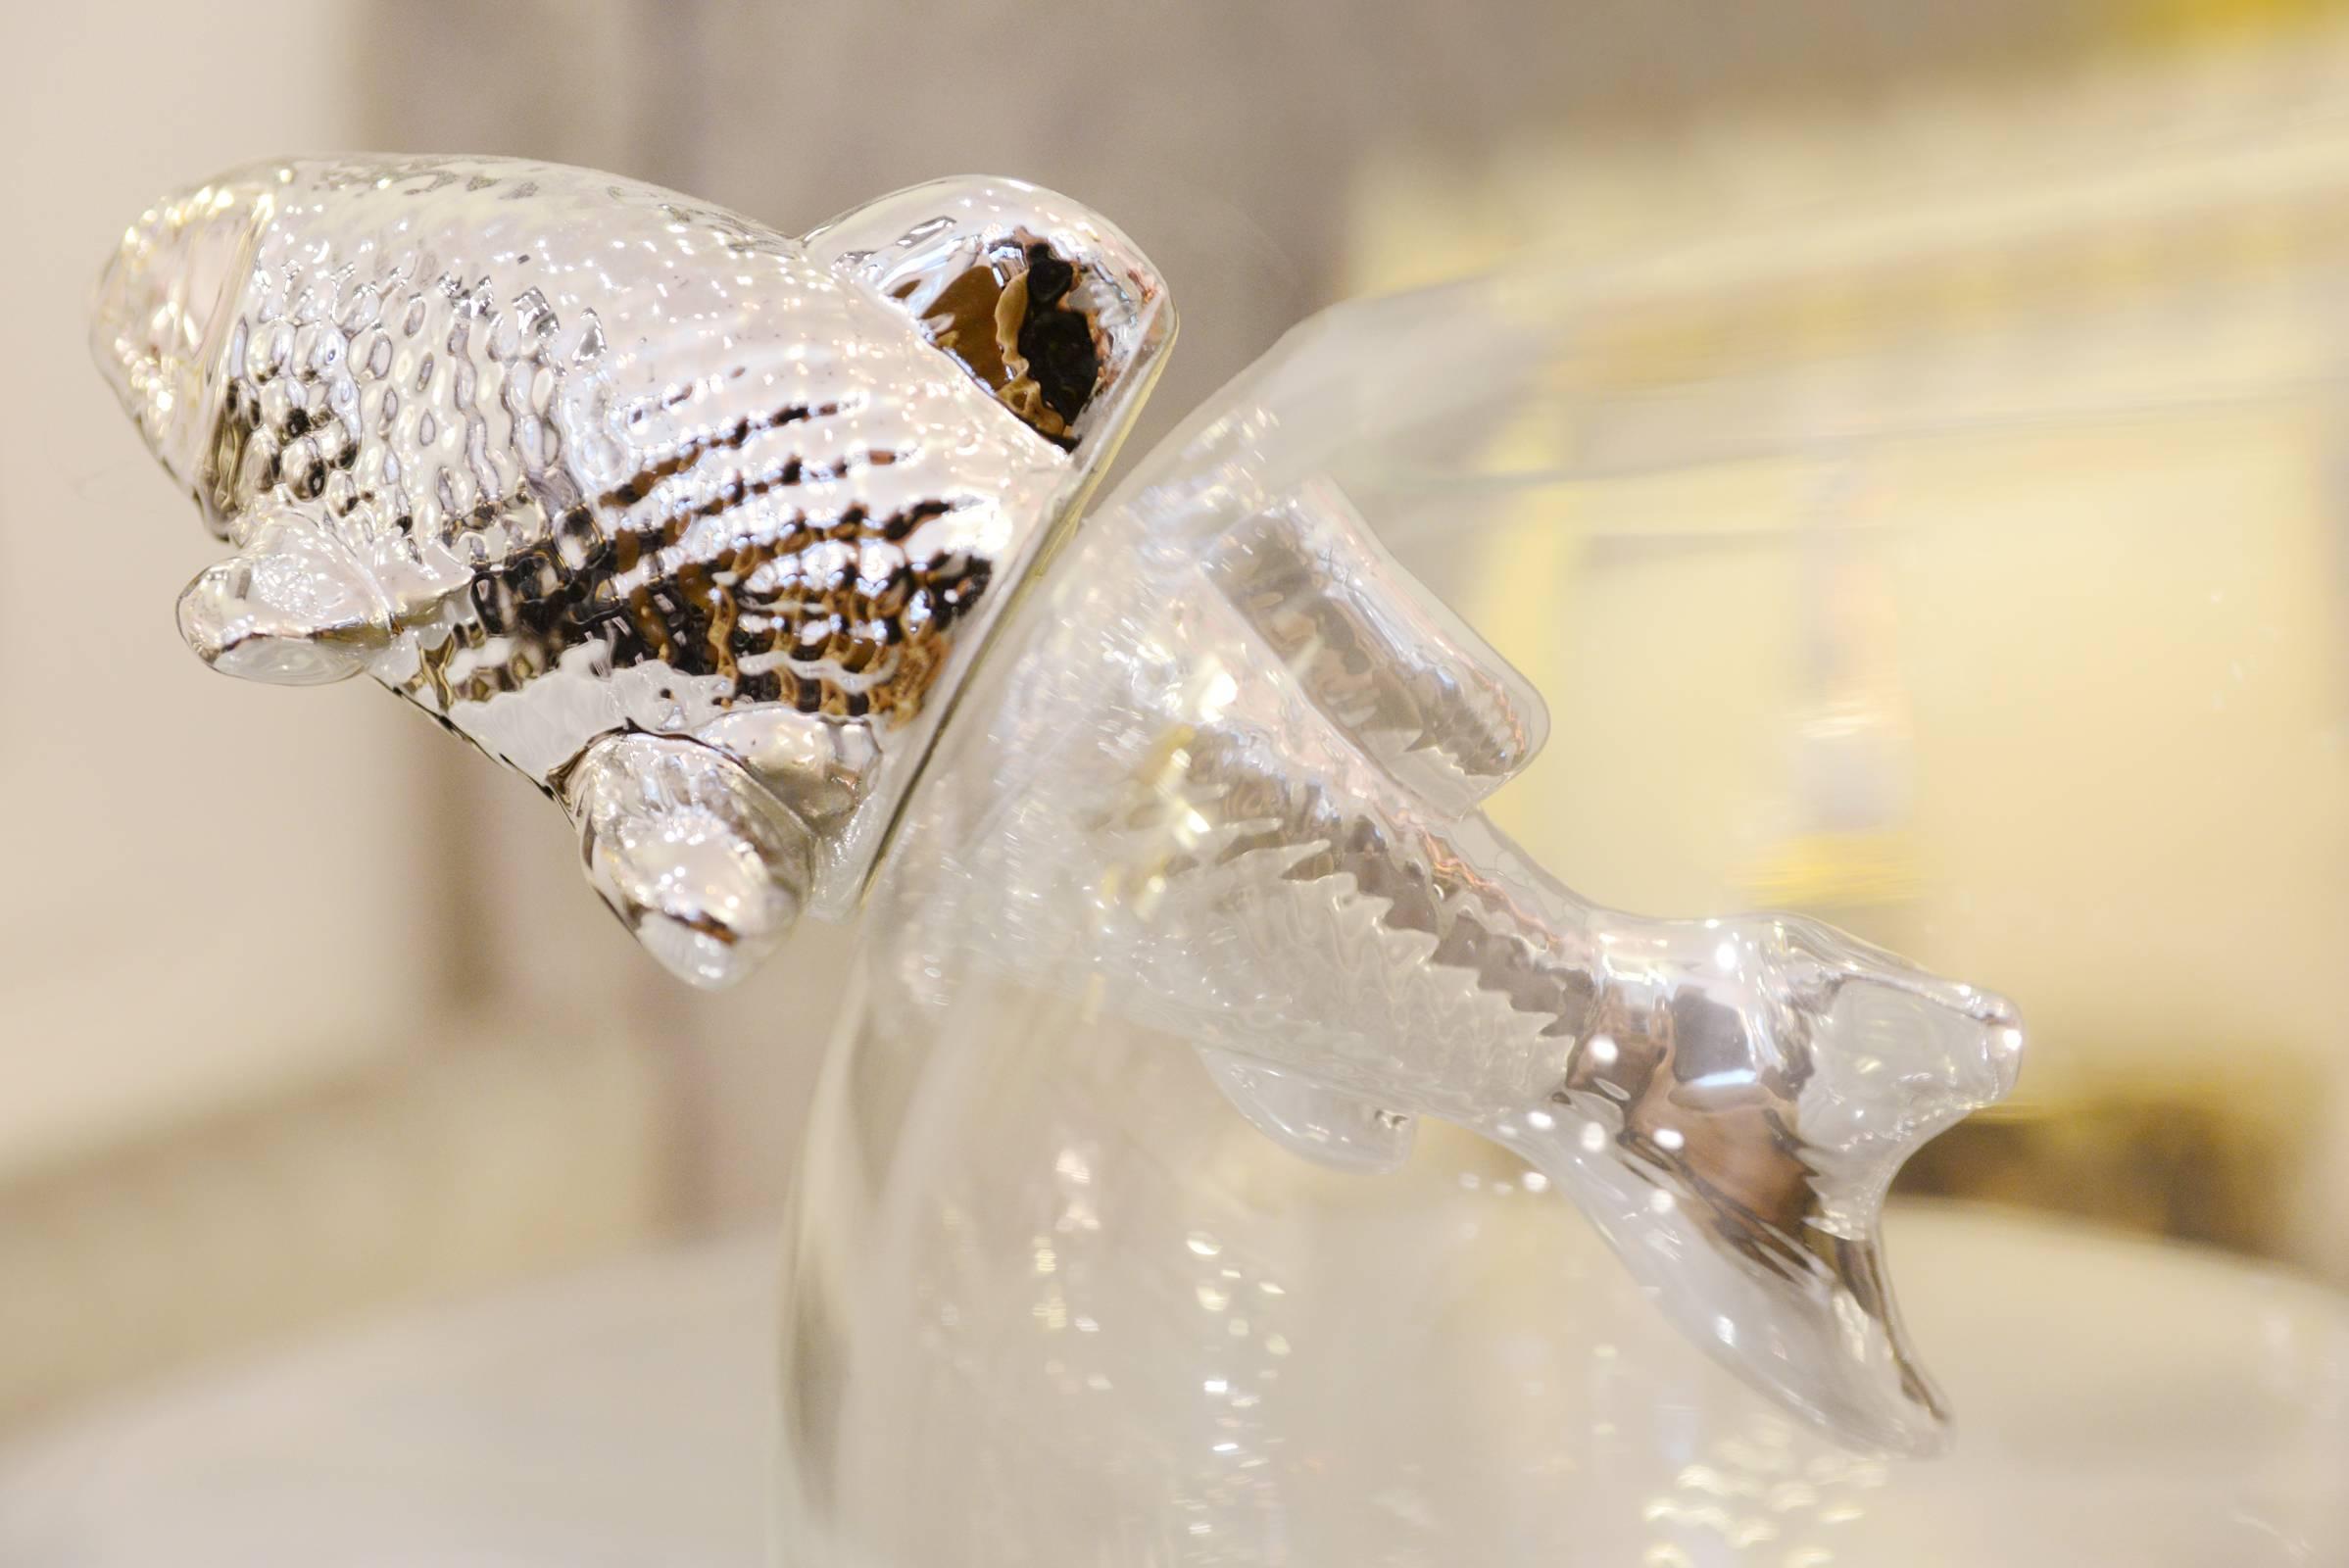 French Vase Silver Fish in Ceramic